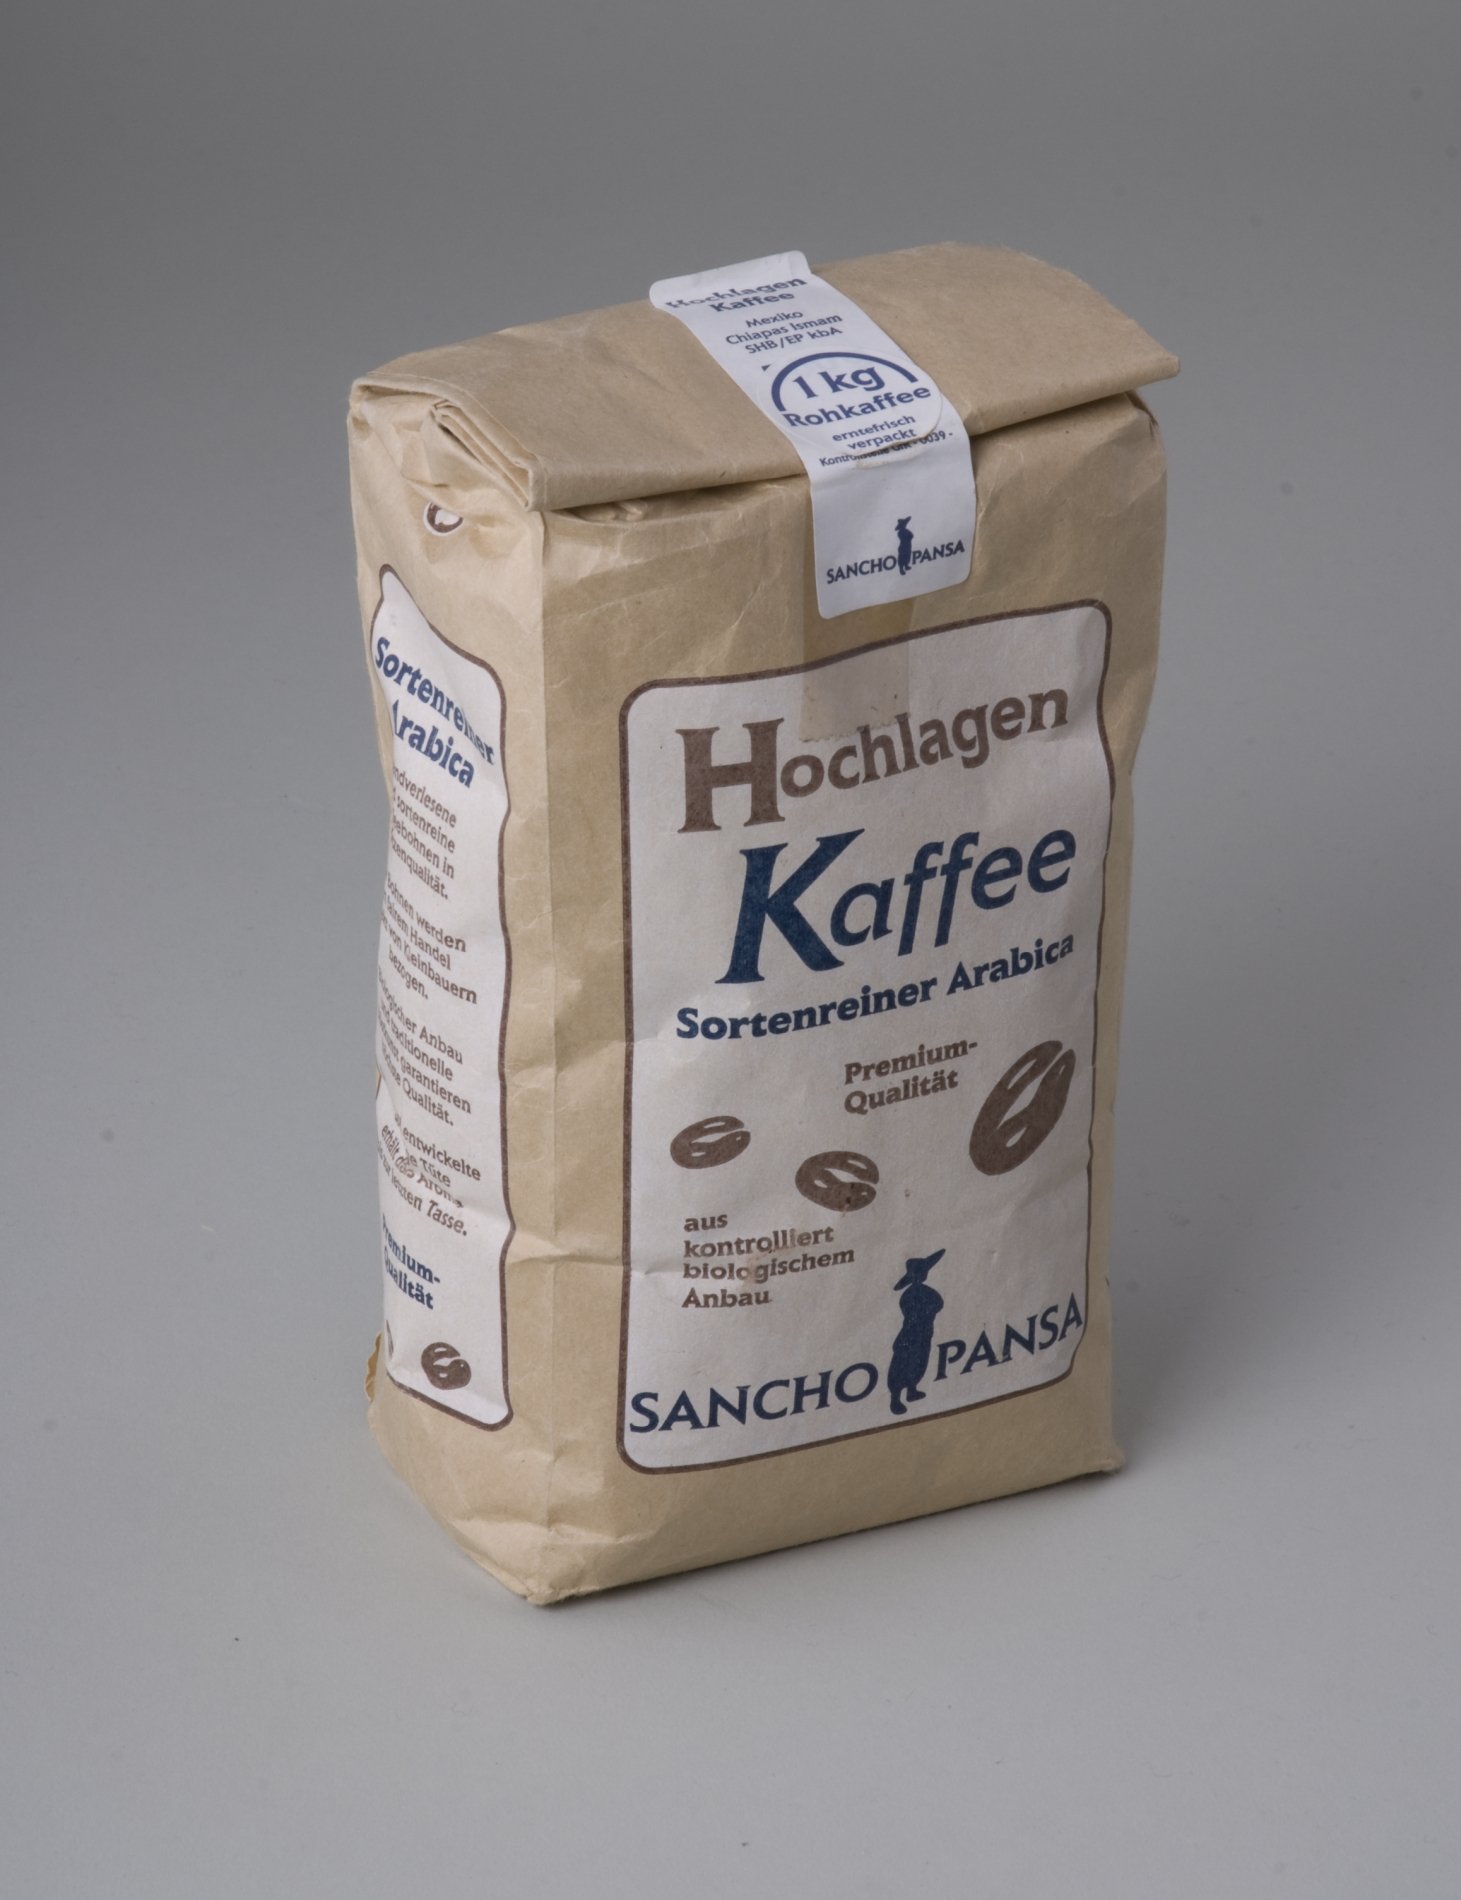 Kaffee-Packung "Hochlagen Kaffee Sortenreiner Arabica" (Stiftung Domäne Dahlem - Landgut und Museum, Weiternutzung nur mit Genehmigung des Museums CC BY-NC-SA)